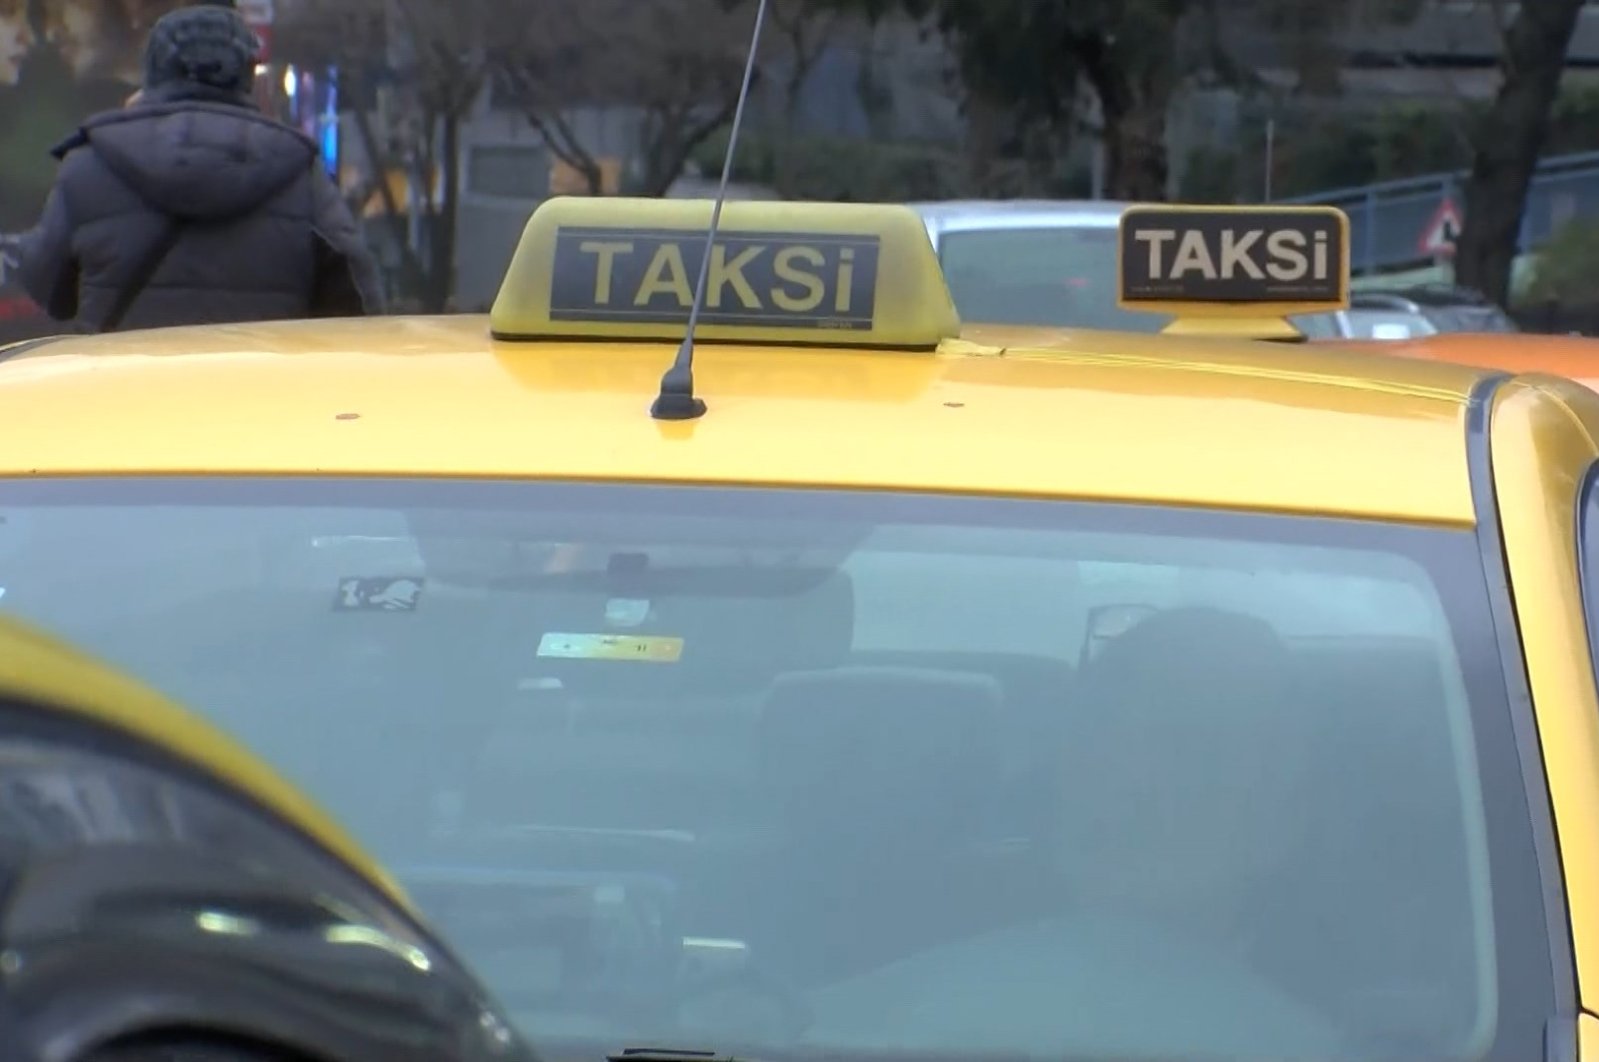 Kosong atau kosong: tanda atap baru taksi Istanbul untuk memudahkan pencarian kami